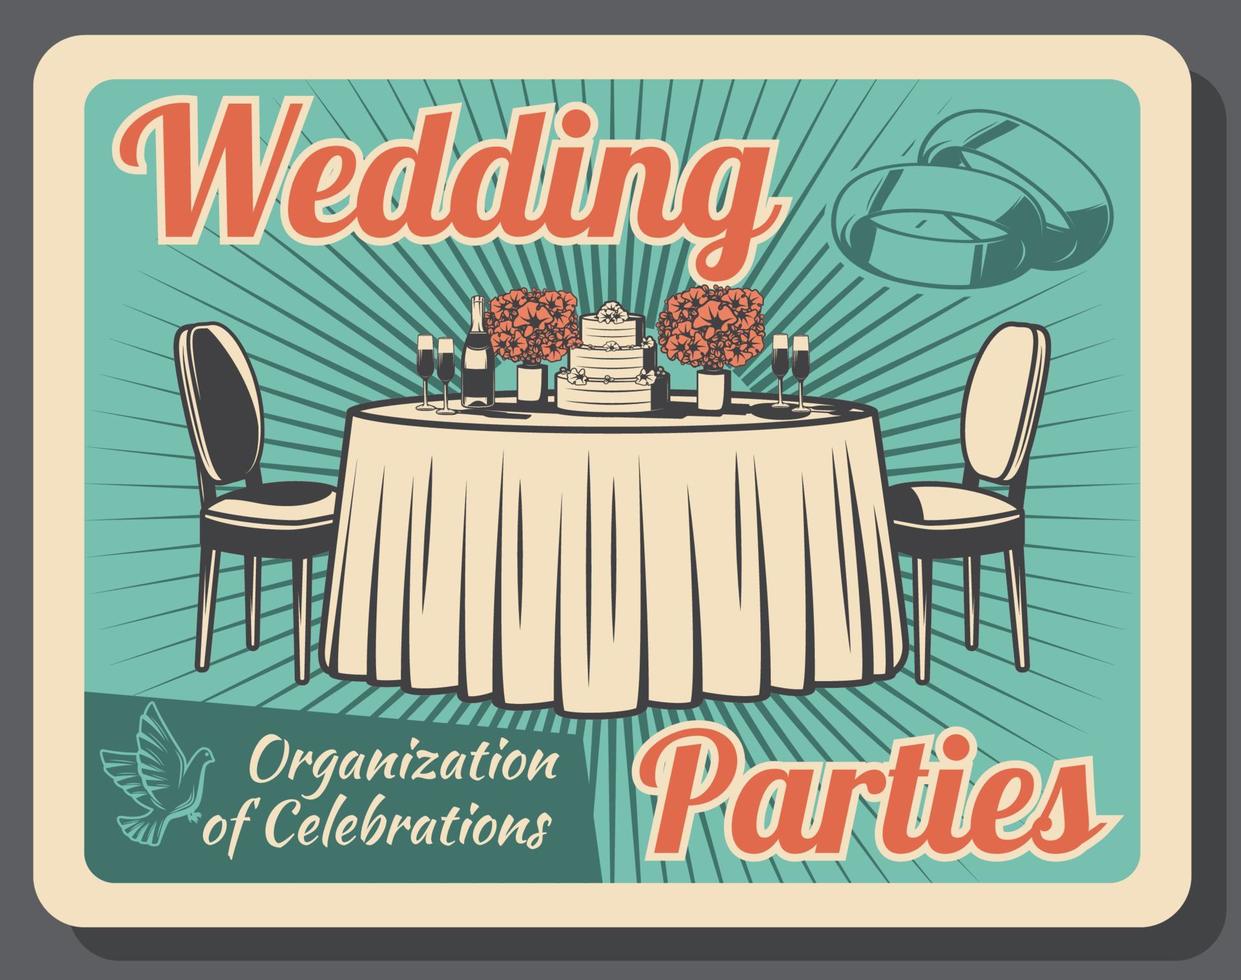 huwelijk viering, bruiloft partij organisatie vector